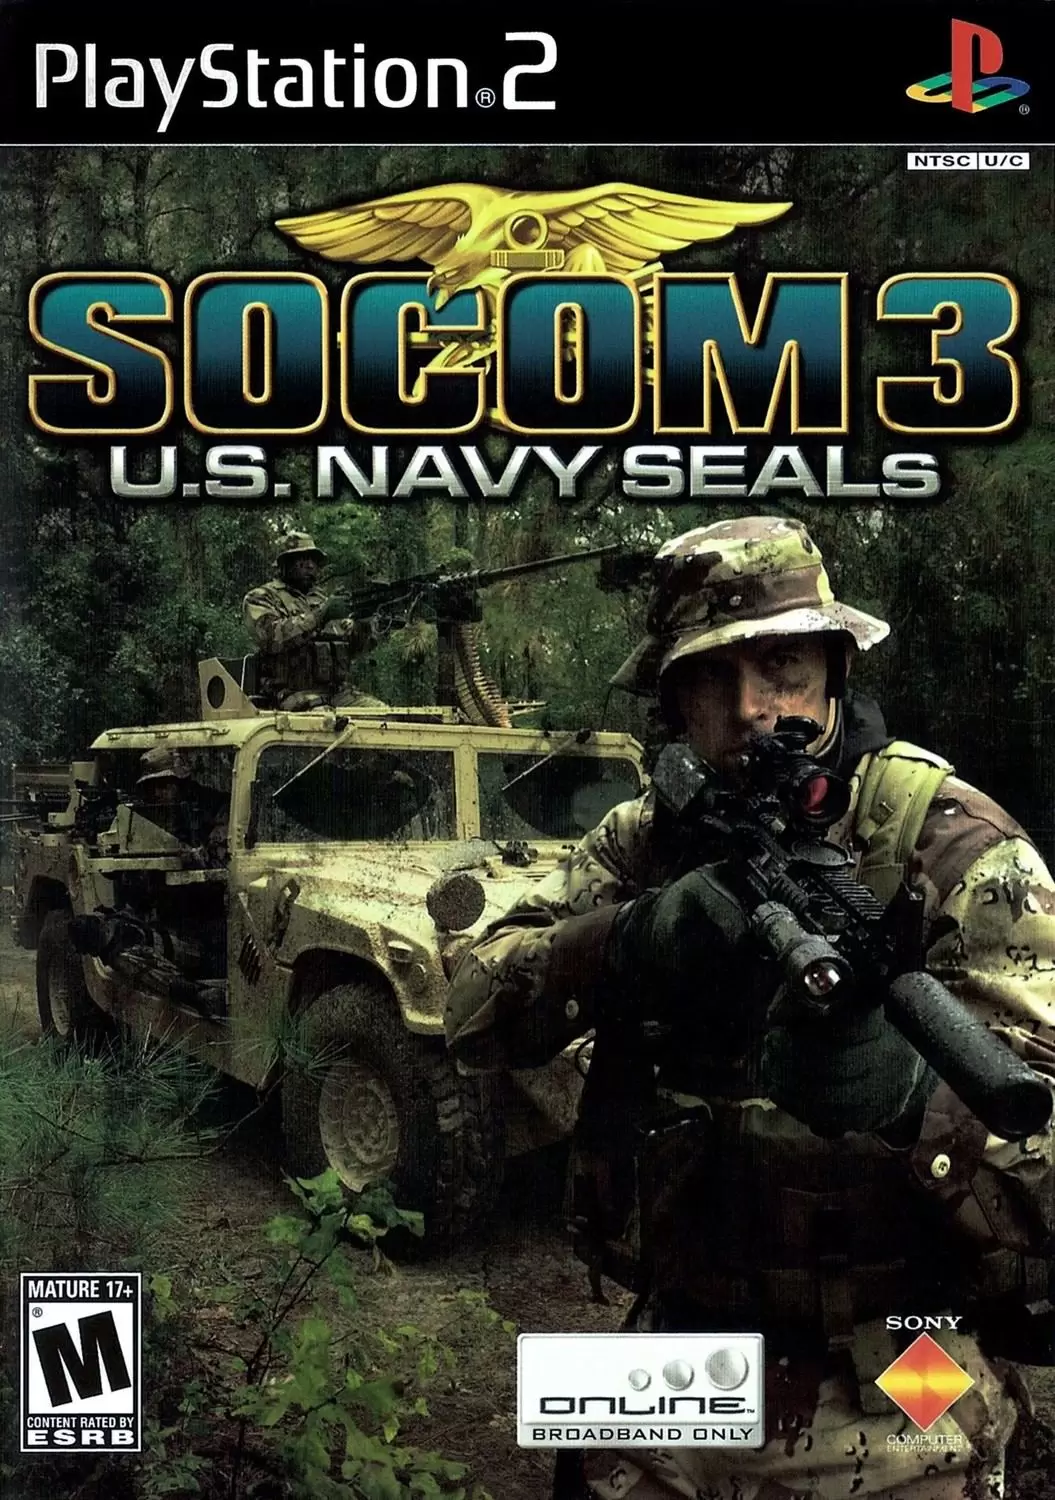 PS2 Games - SOCOM 3: U.S. Navy SEALs